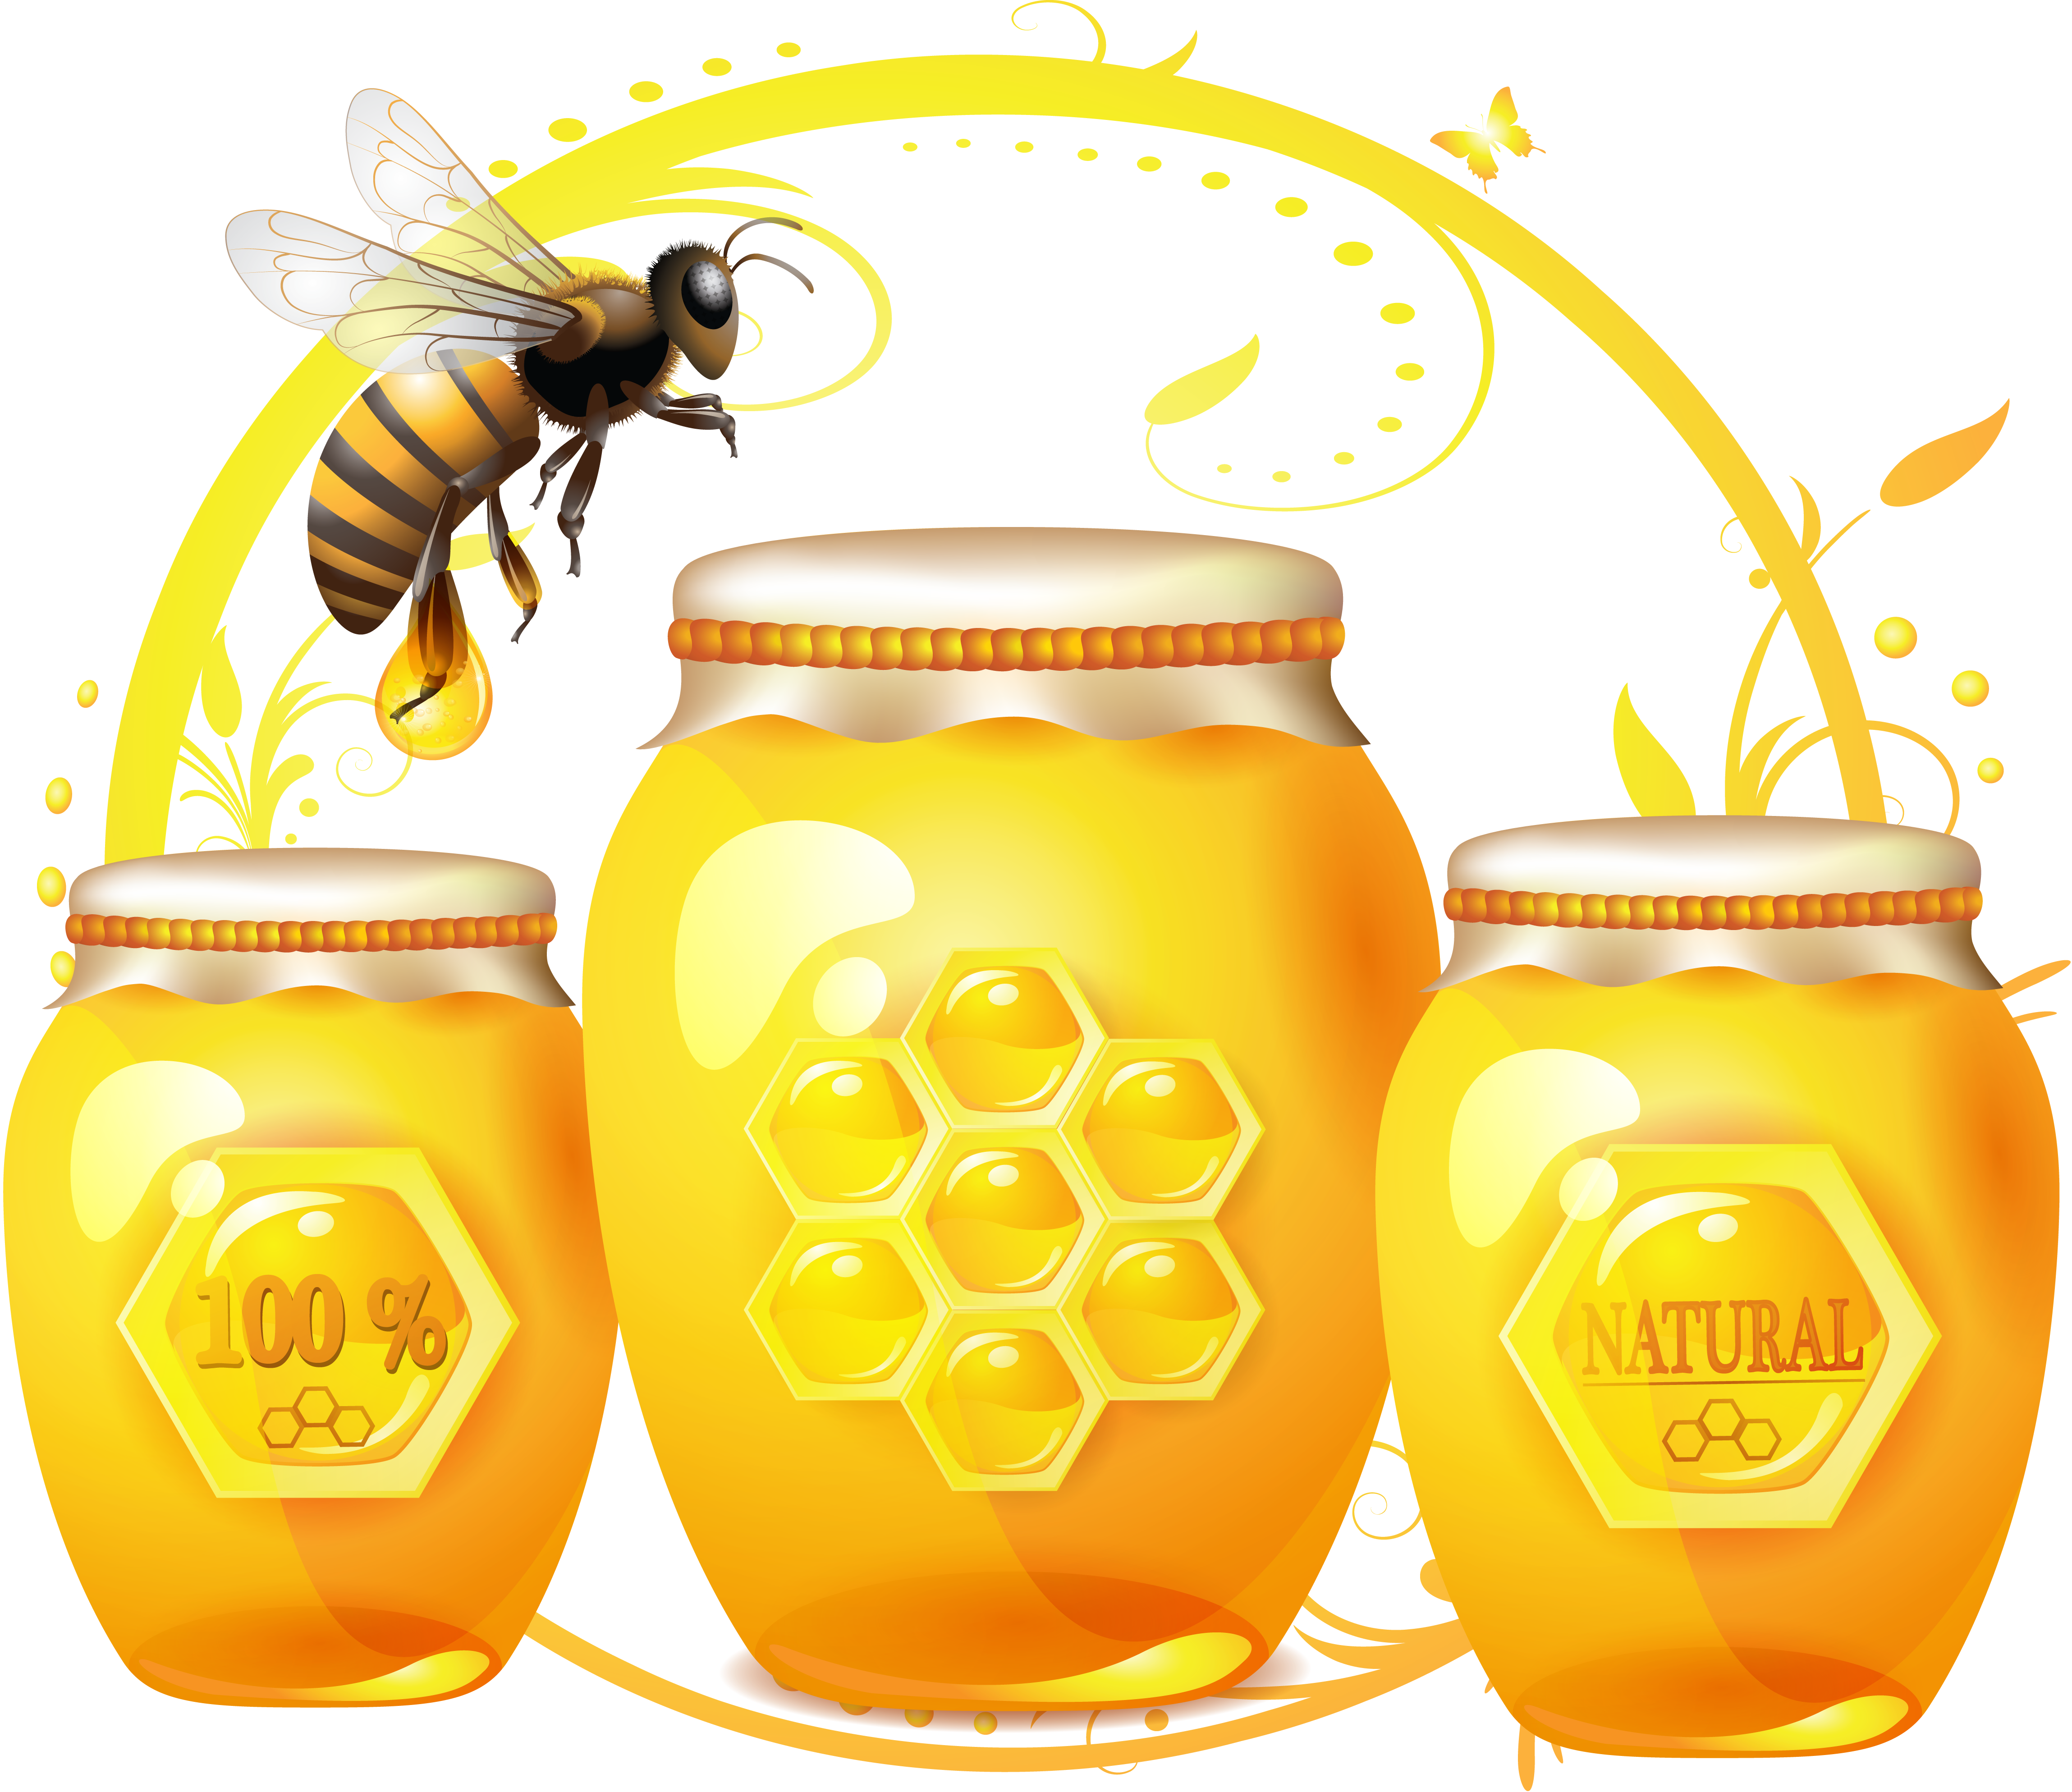 Honey медовый. Мёд натуральный. Пчелы и мед. Реклама башкирского меда. Мед на белом фоне.